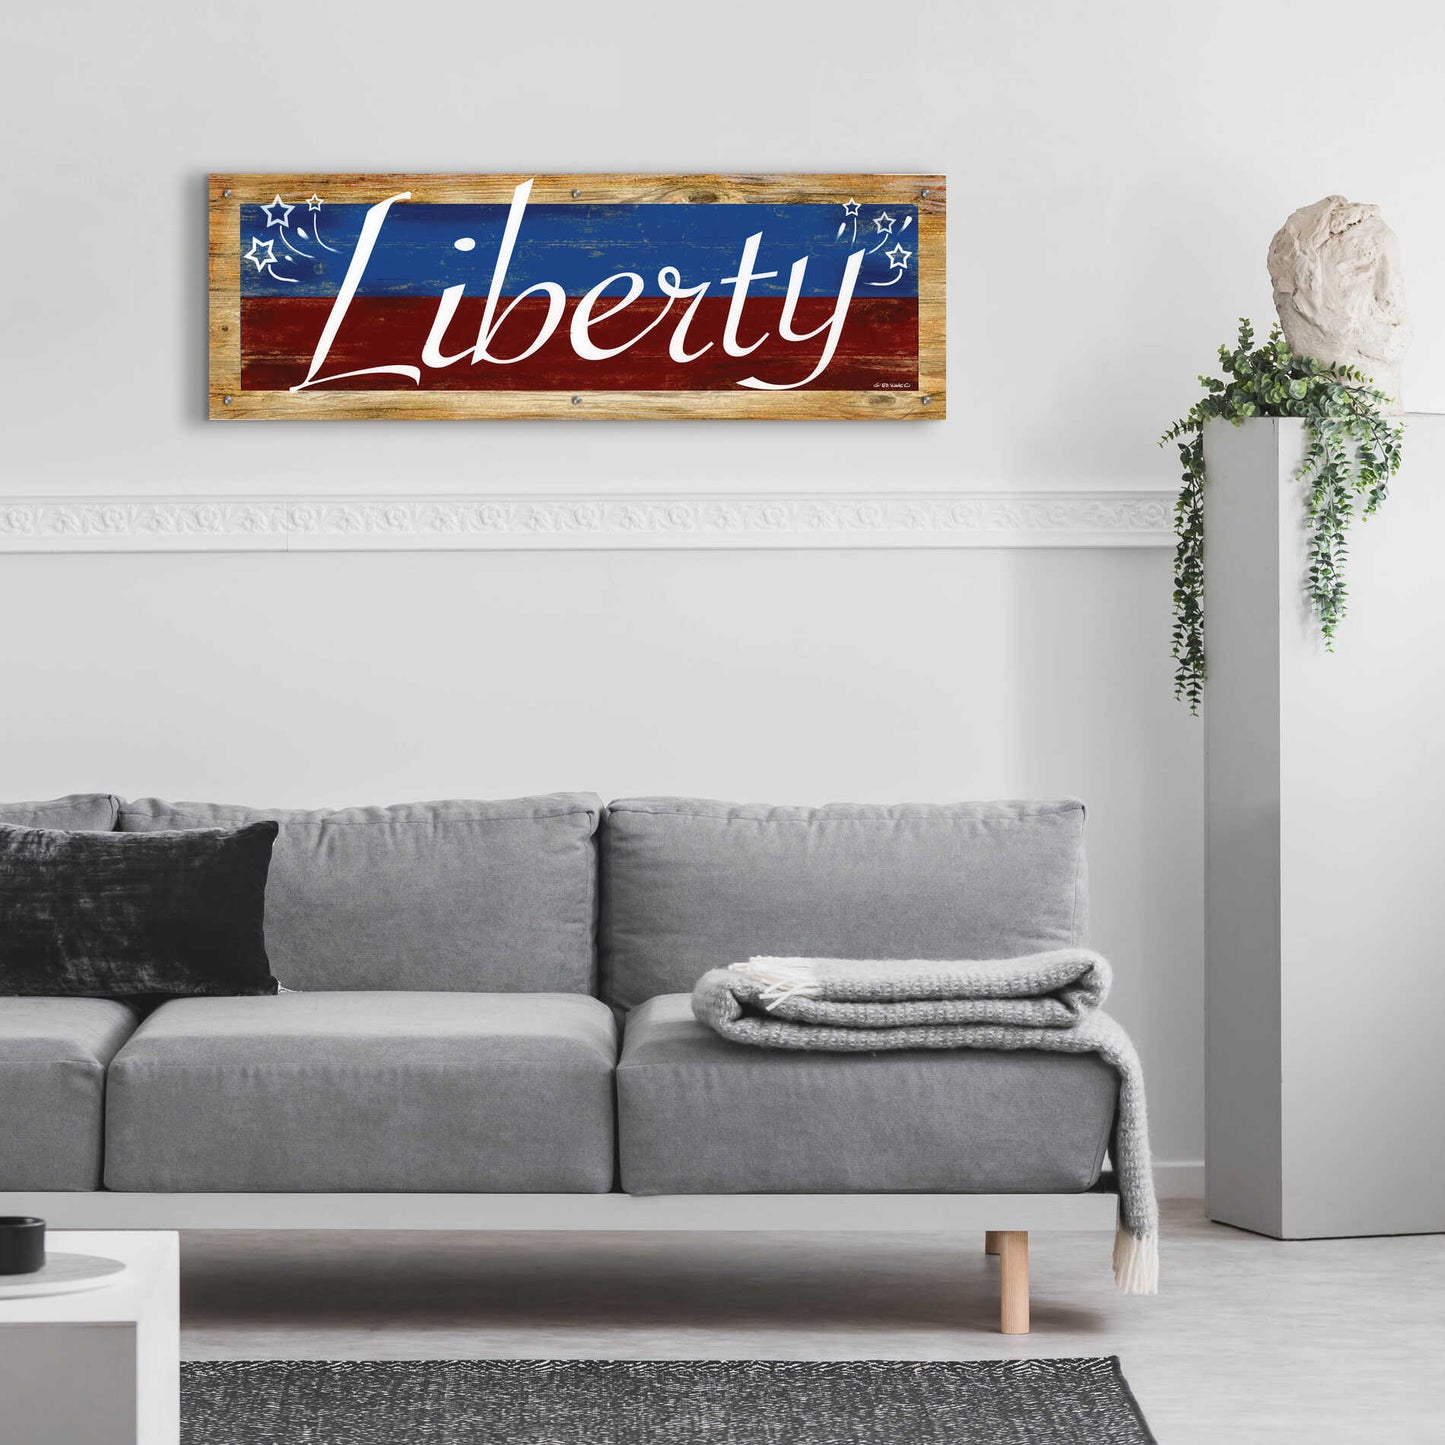 Epic Art 'Liberty' by Ed Wargo, Acrylic Glass Wall Art,48x16